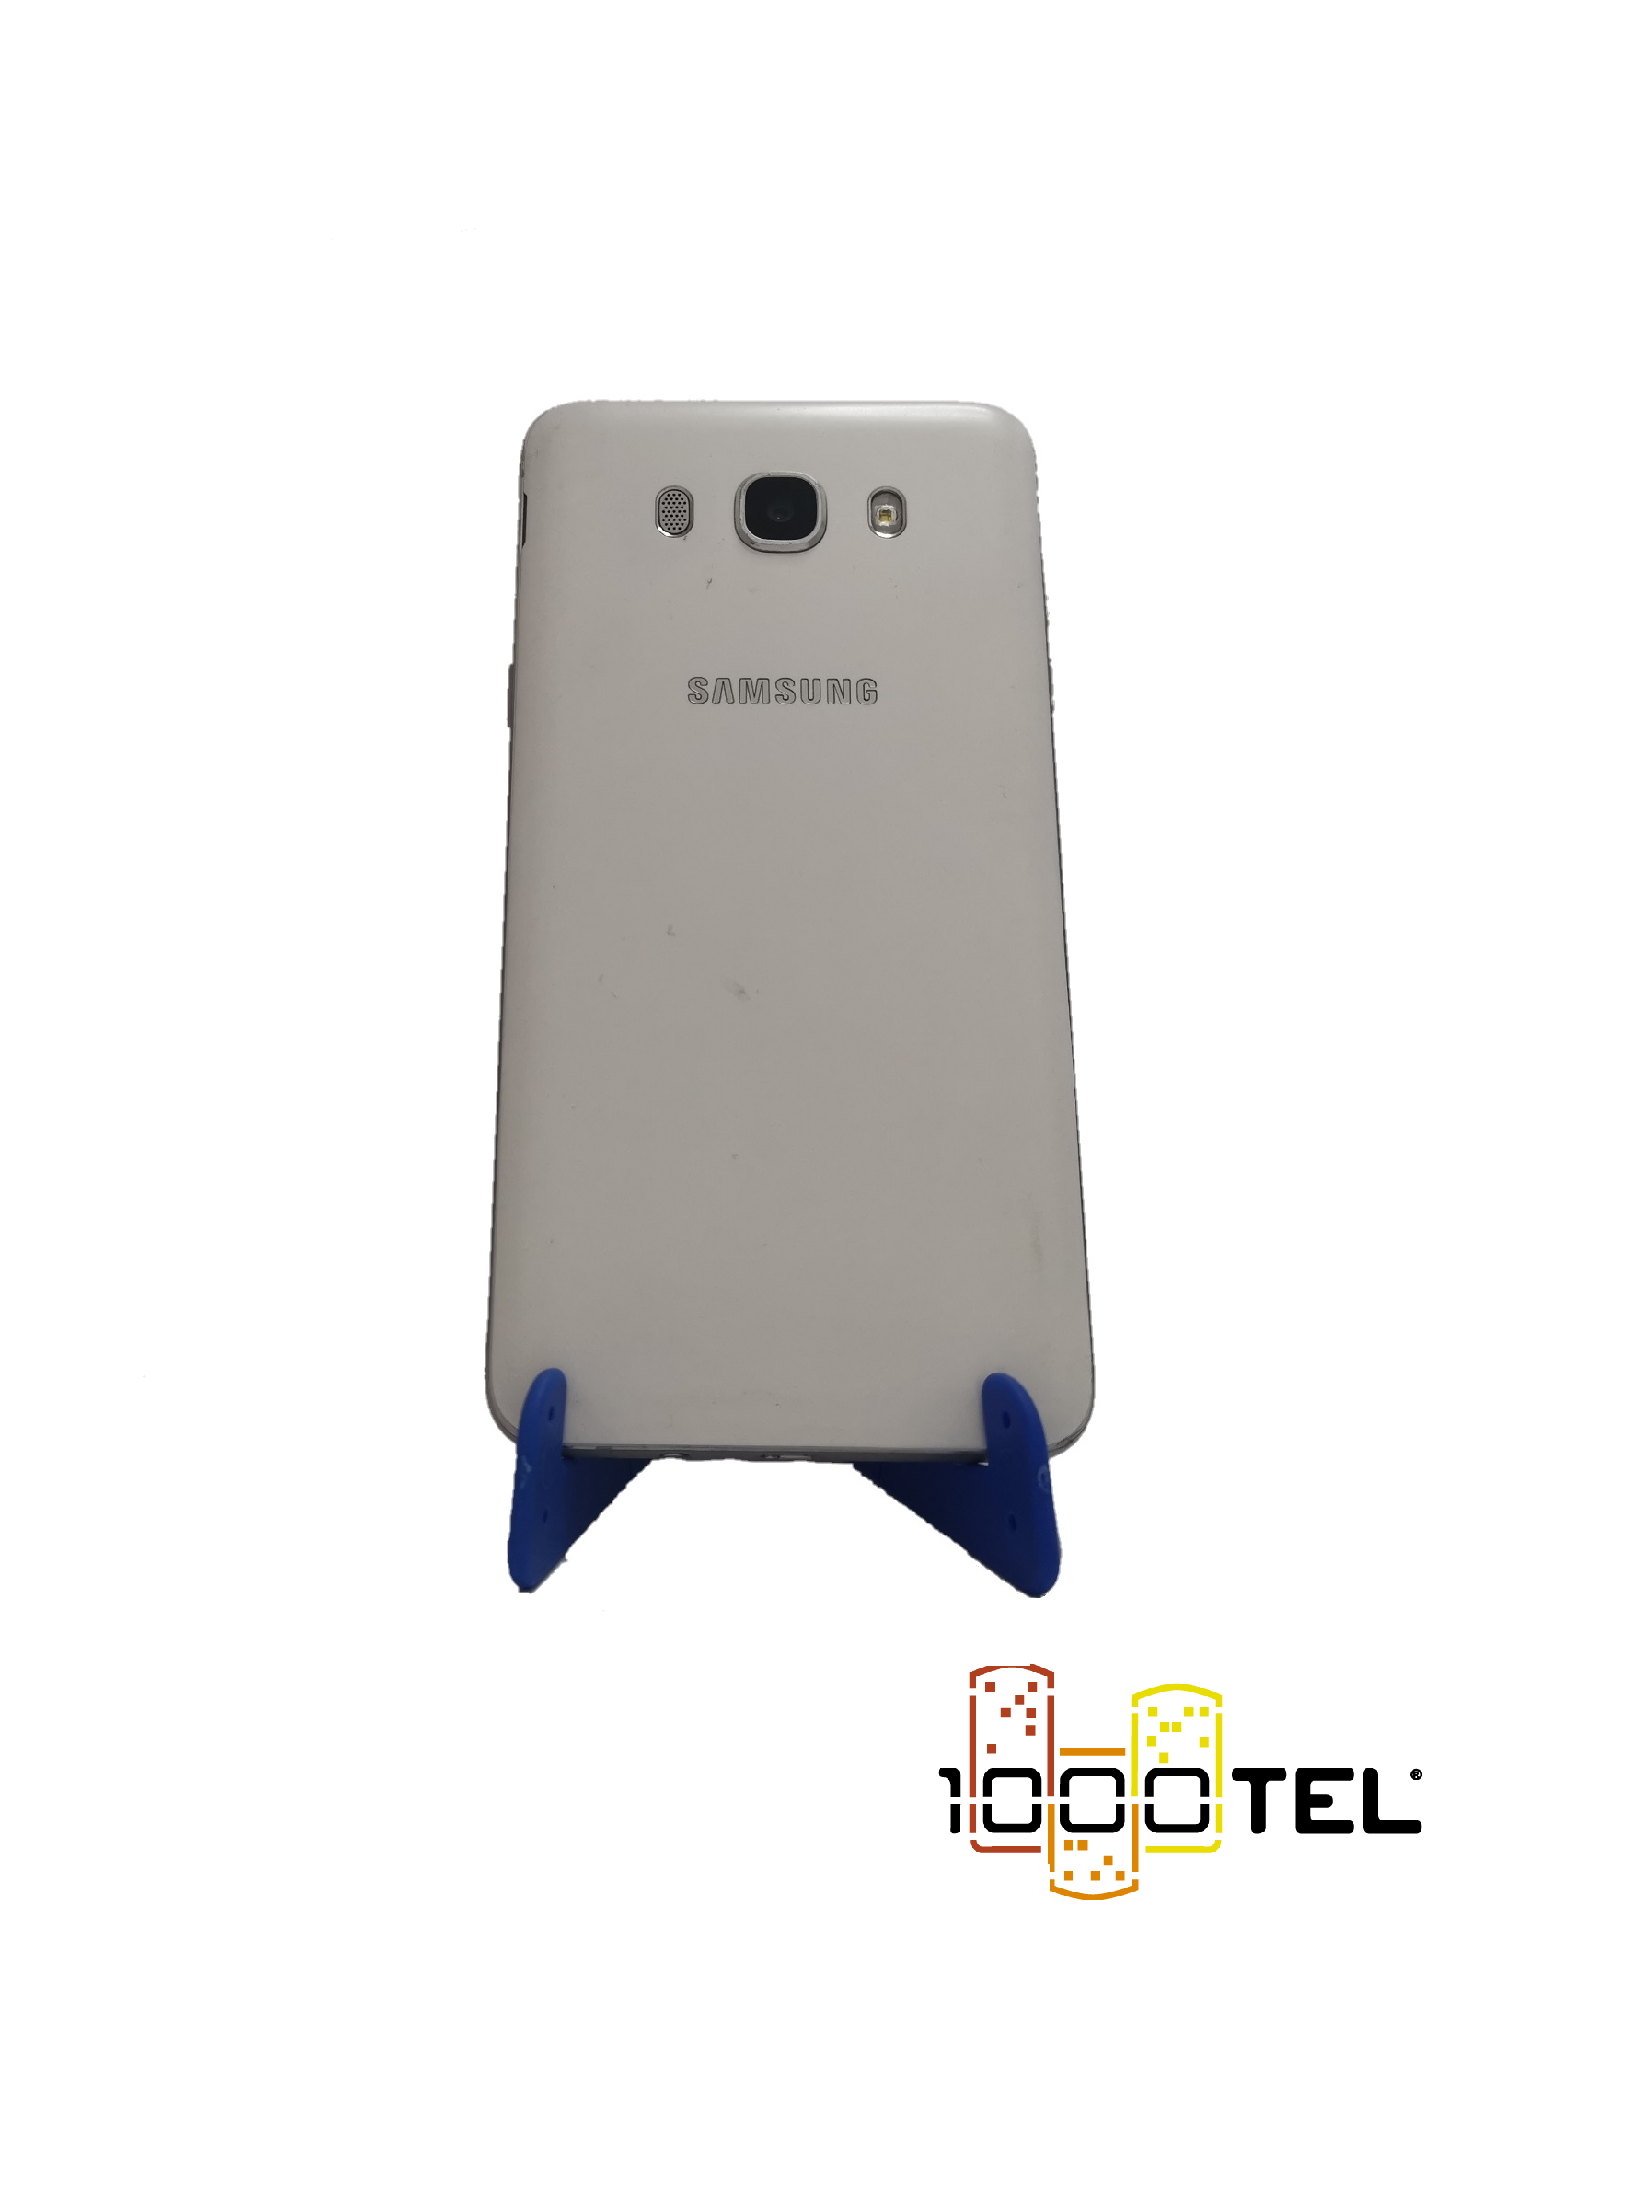 Samsung Galaxy J7 2016 16GB Blanco #2